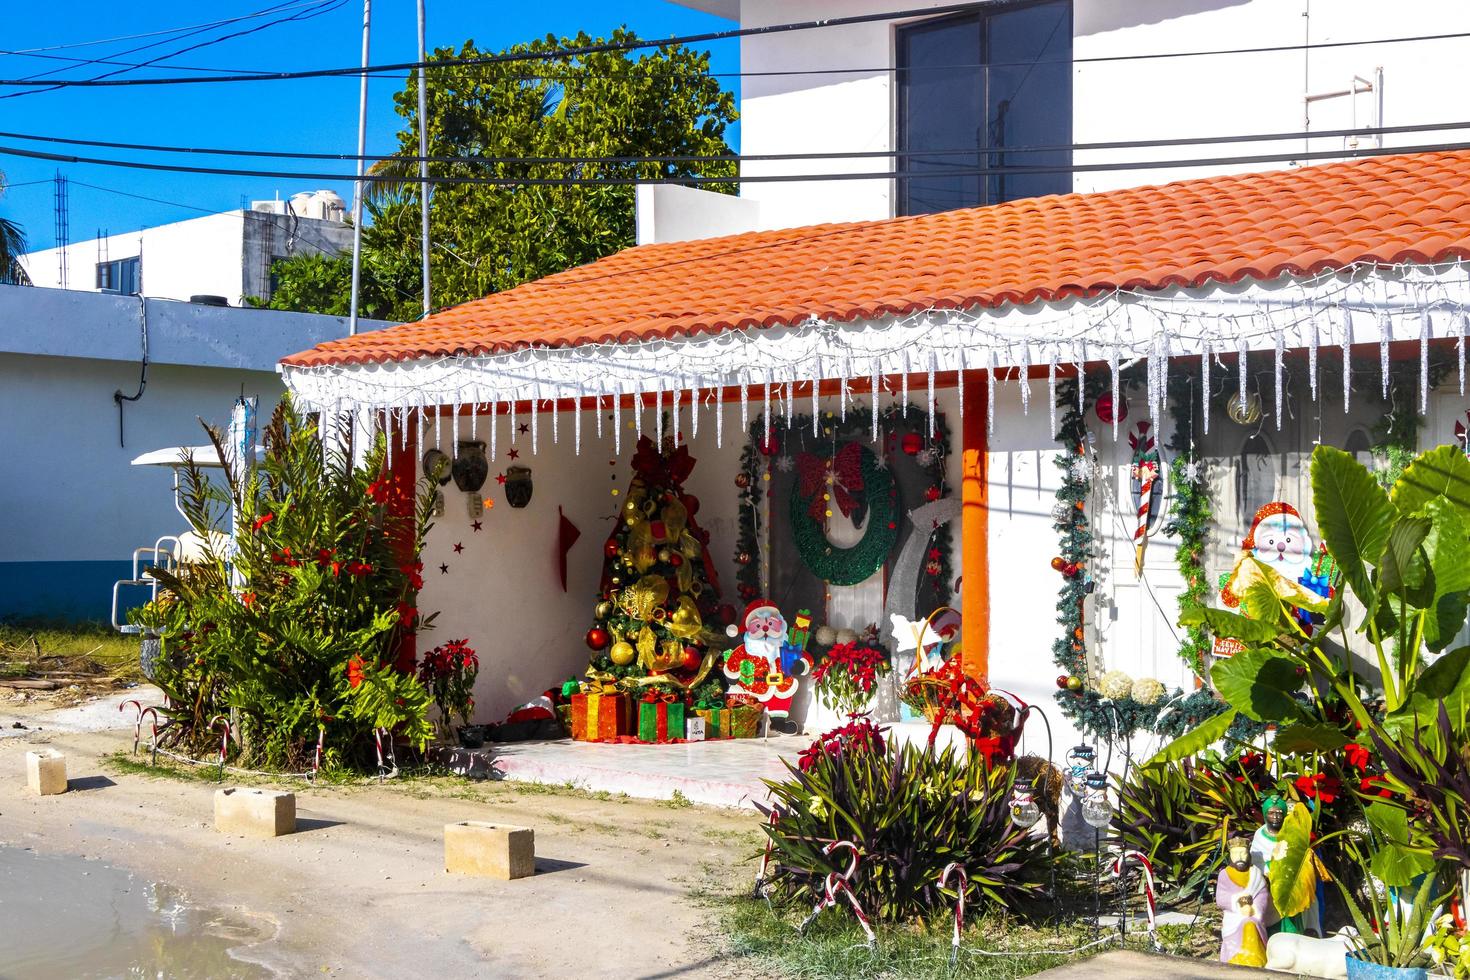 holbox quintana roo mexico 2021 colorido pueblo de la isla de holbox con tiendas de barro y gente mexico. foto